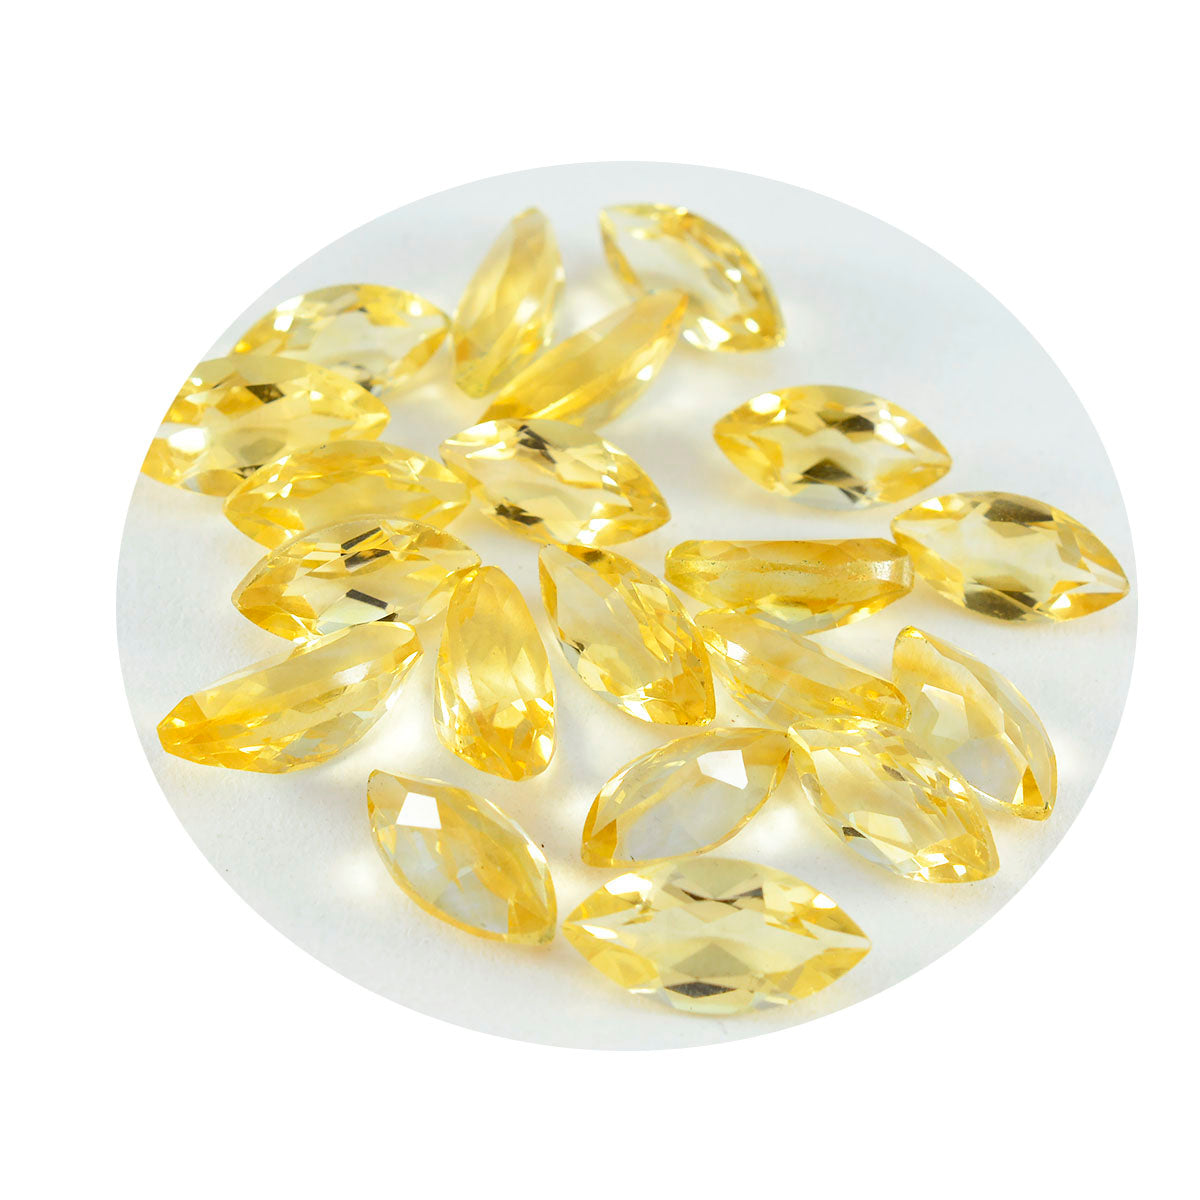 riyogems 1шт натуральный желтый цитрин ограненный 5x10 мм форма маркиза качество аа россыпь камень